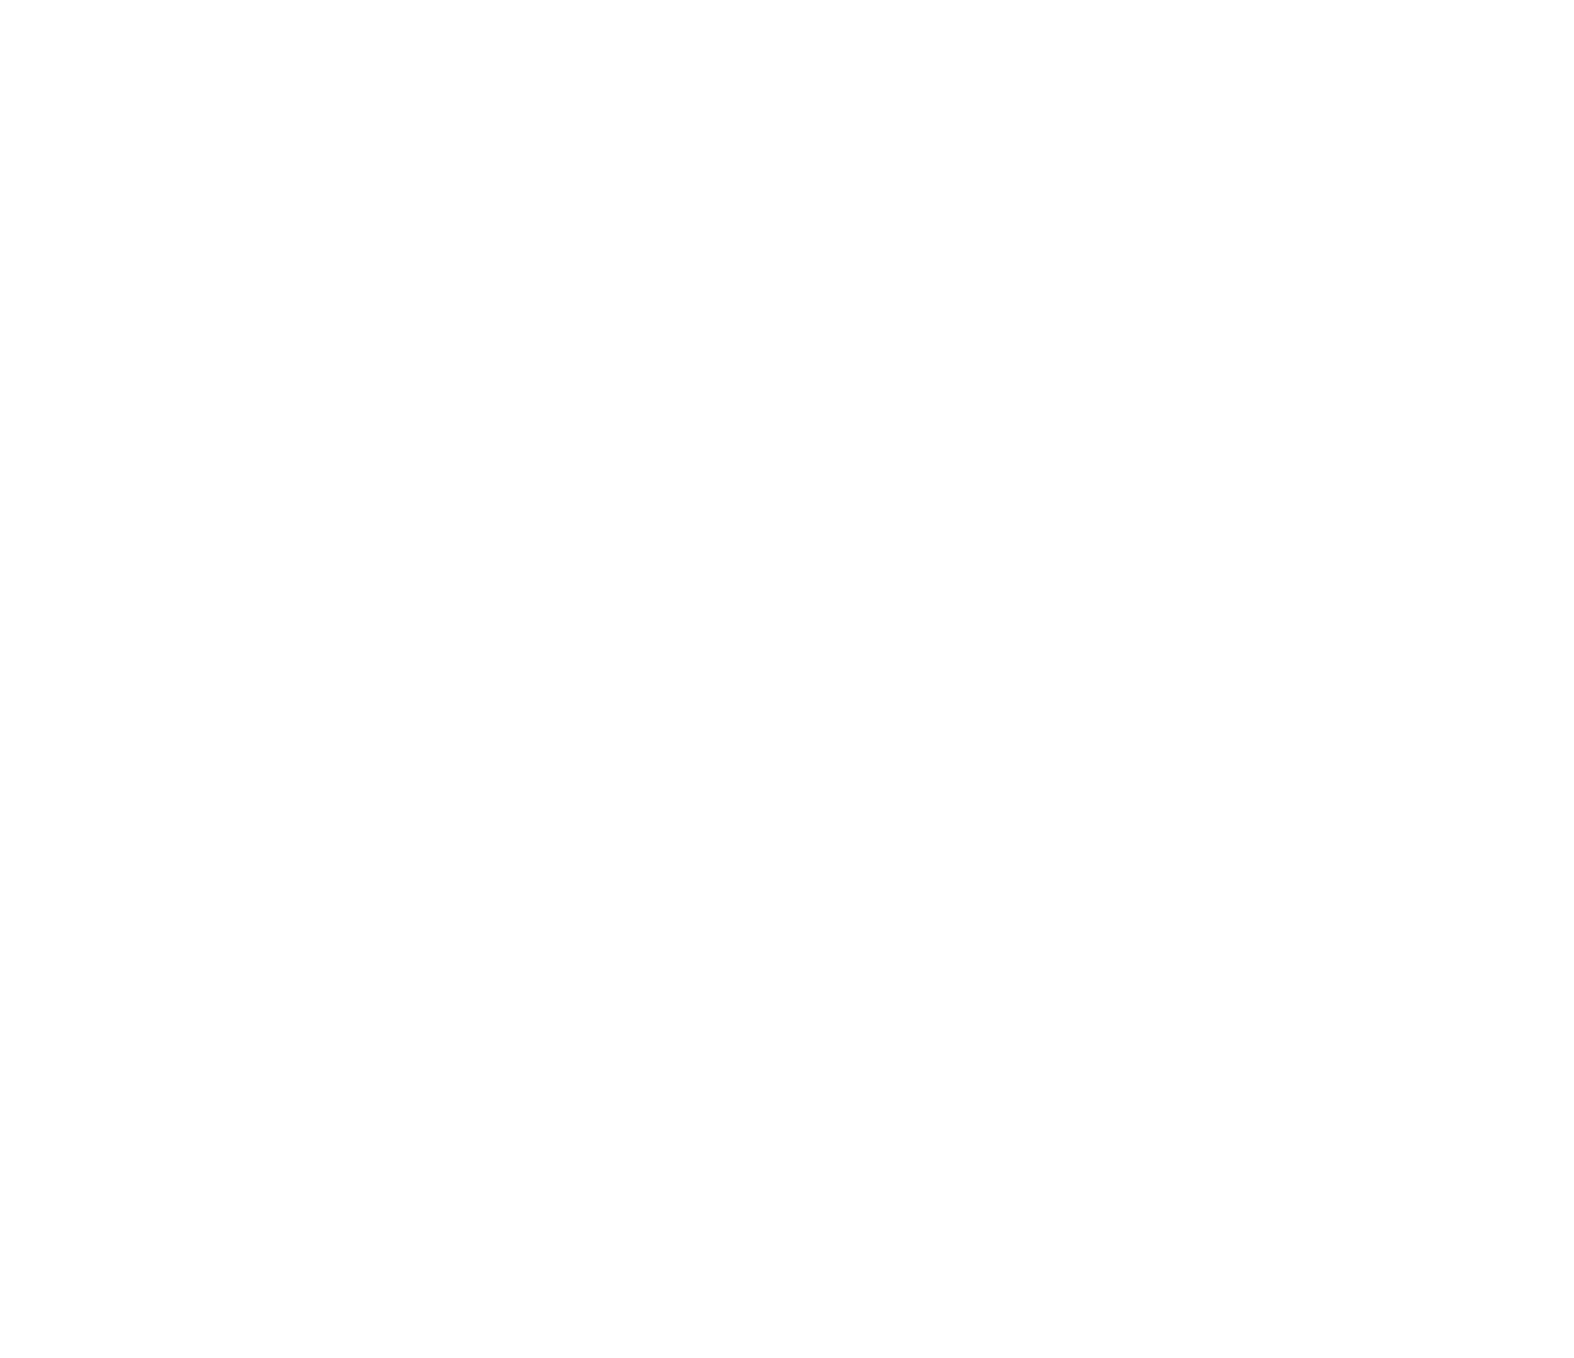 Fluidra logo for dark backgrounds (transparent PNG)